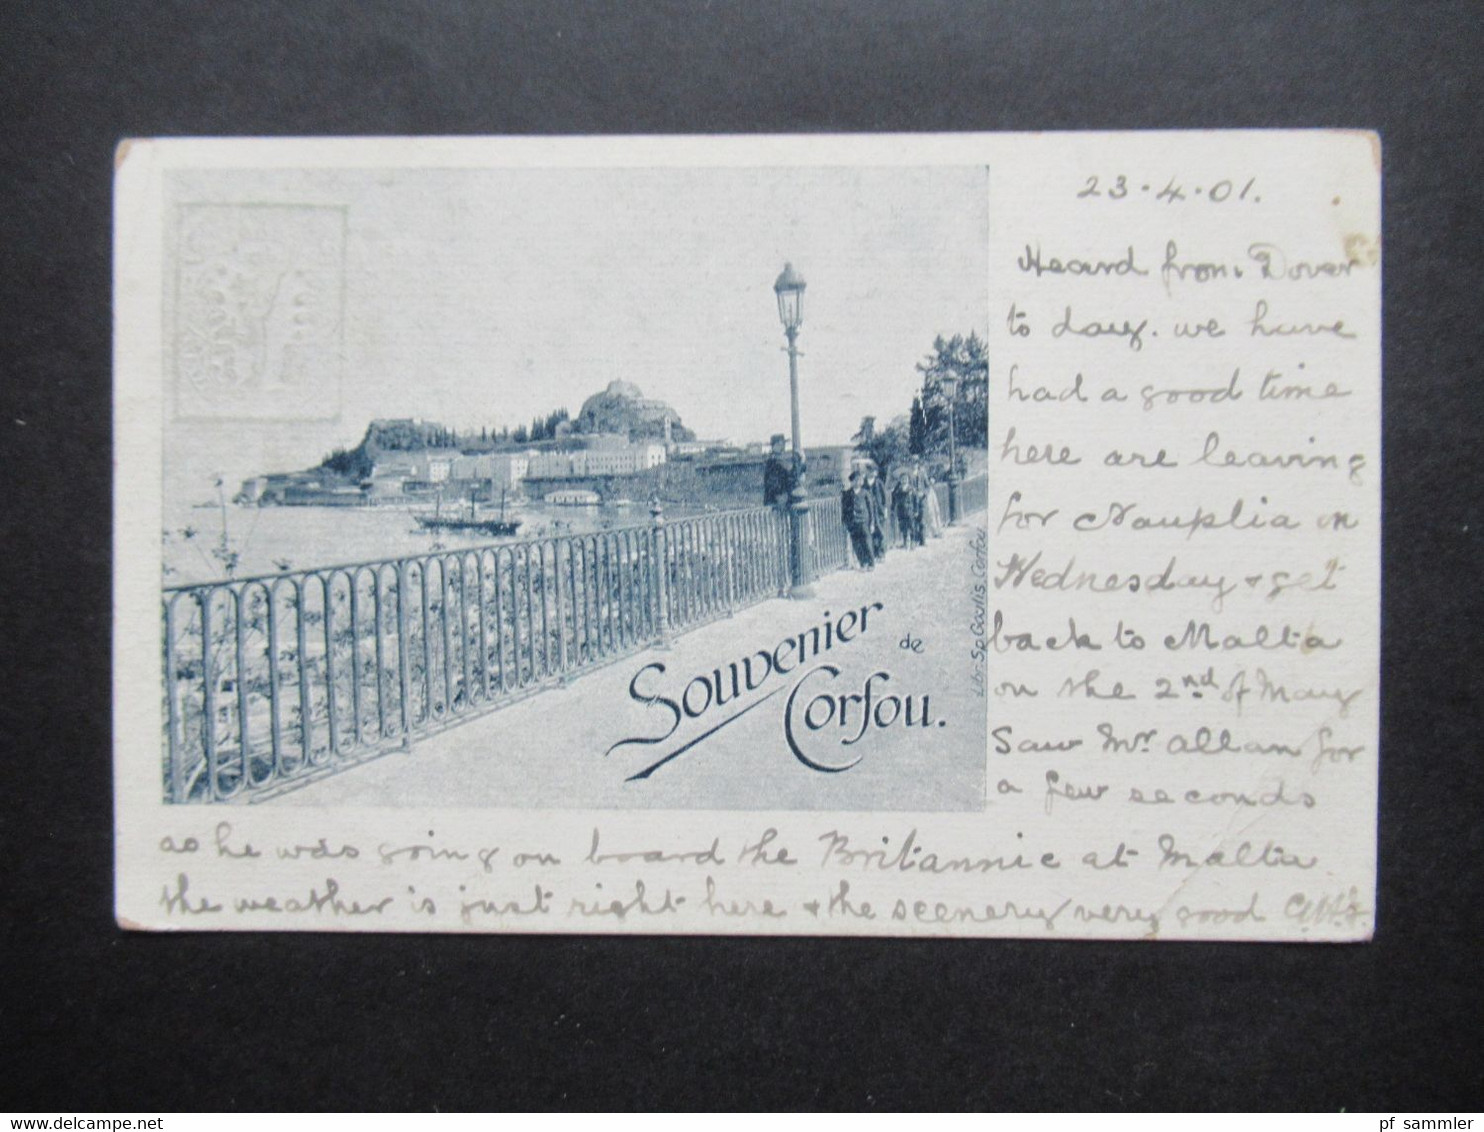 Griechenland 1901 Ganzsache / Bildpostkarte Souvenir De Corfou Libr. Sp. Goulis Corfou Nach Chatham England Gesendet - Entiers Postaux